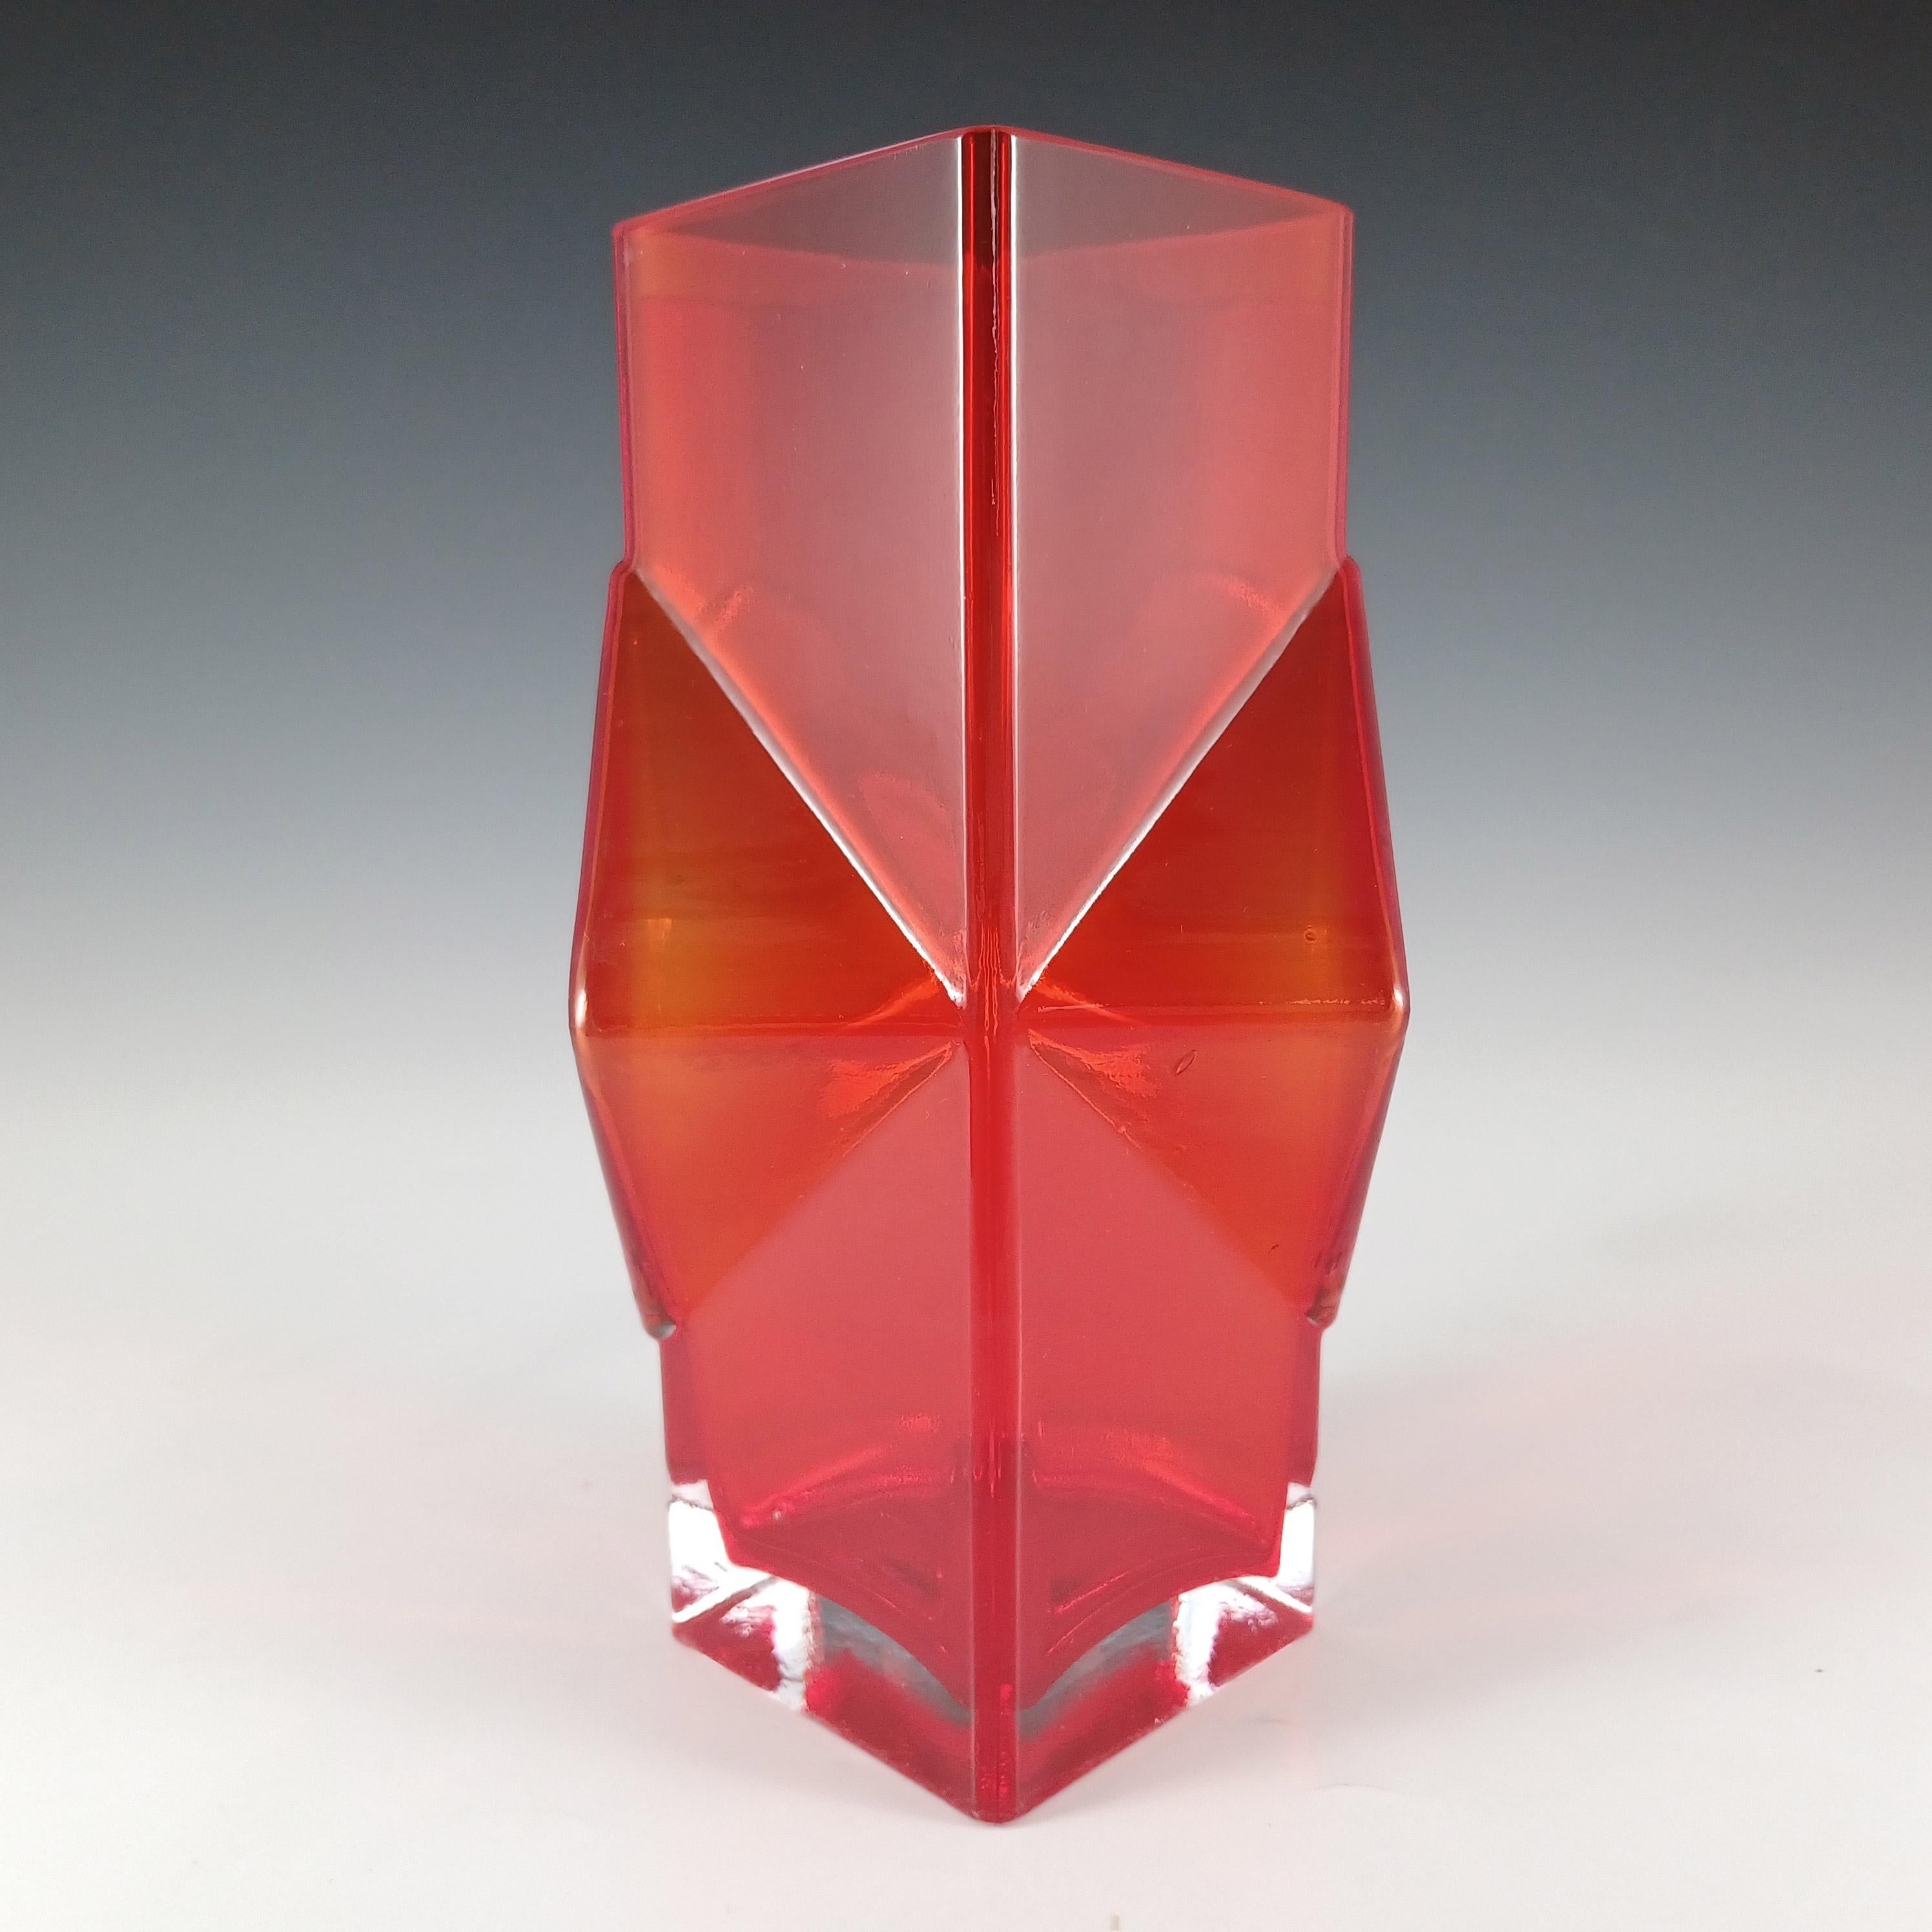 Finnish Riihimaki #1388 Erkkitapio Siiroinen Red Glass Pablo Vase For Sale